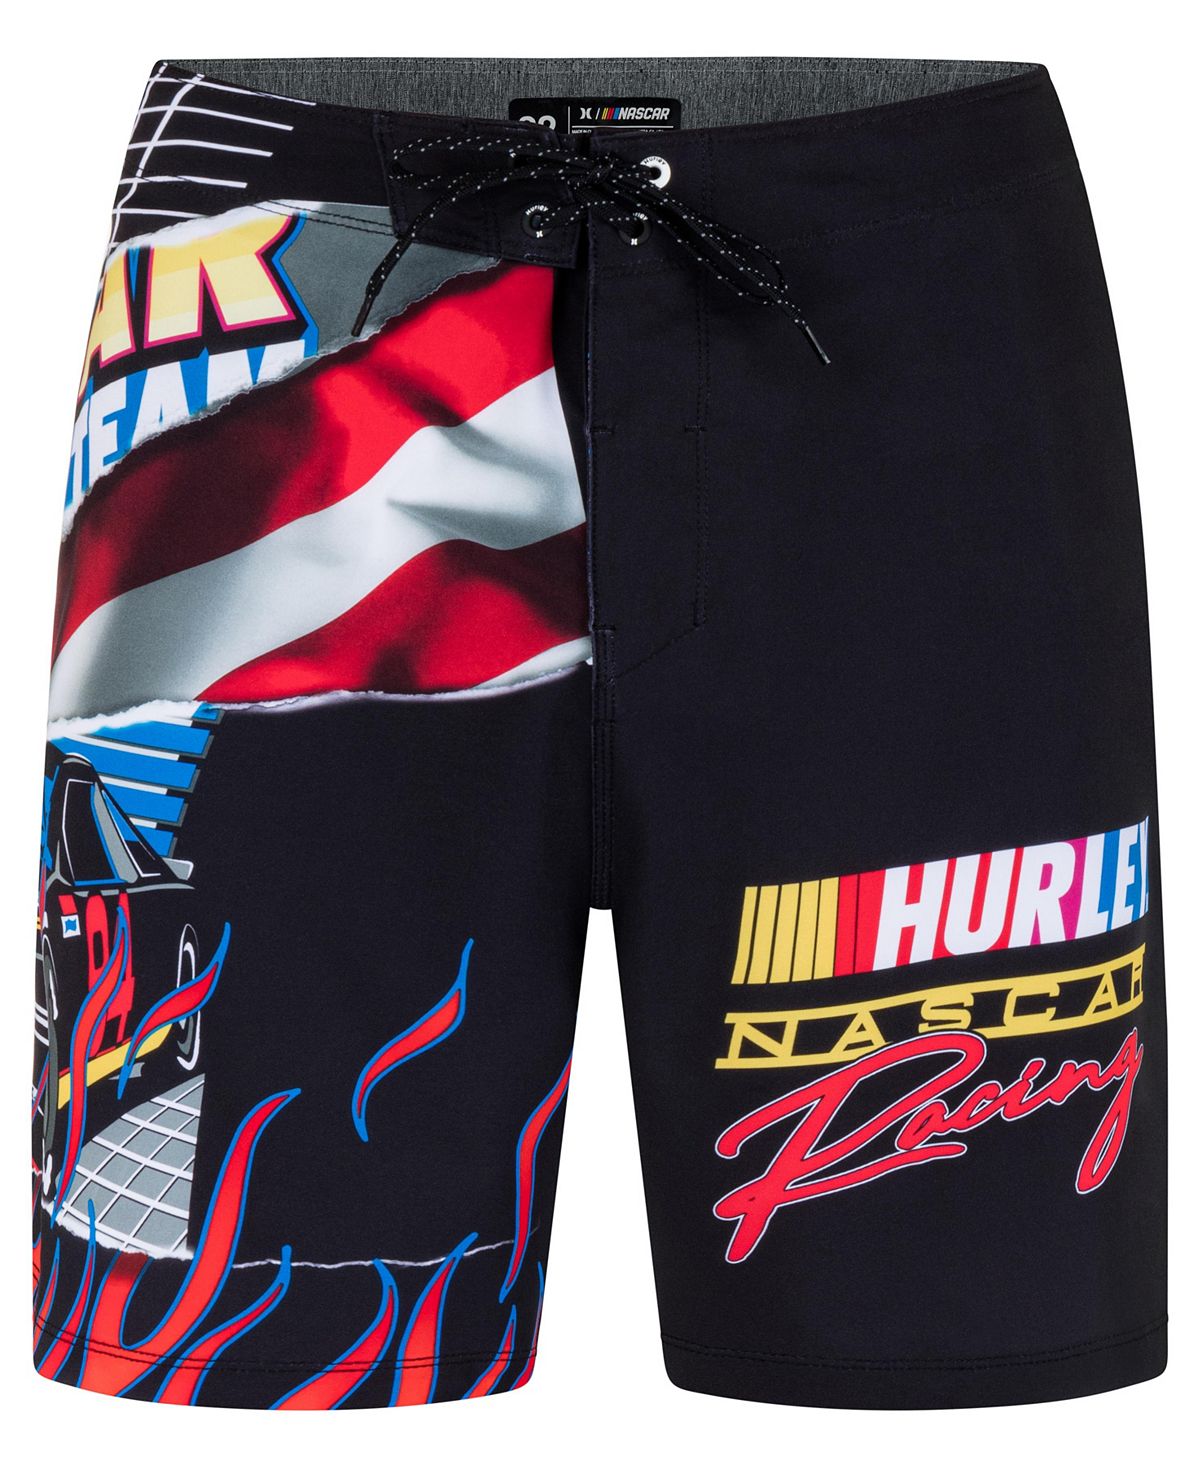 Мужские шорты для досок Phantom Nascar Racing 20 дюймов на шнурке Hurley цена и фото